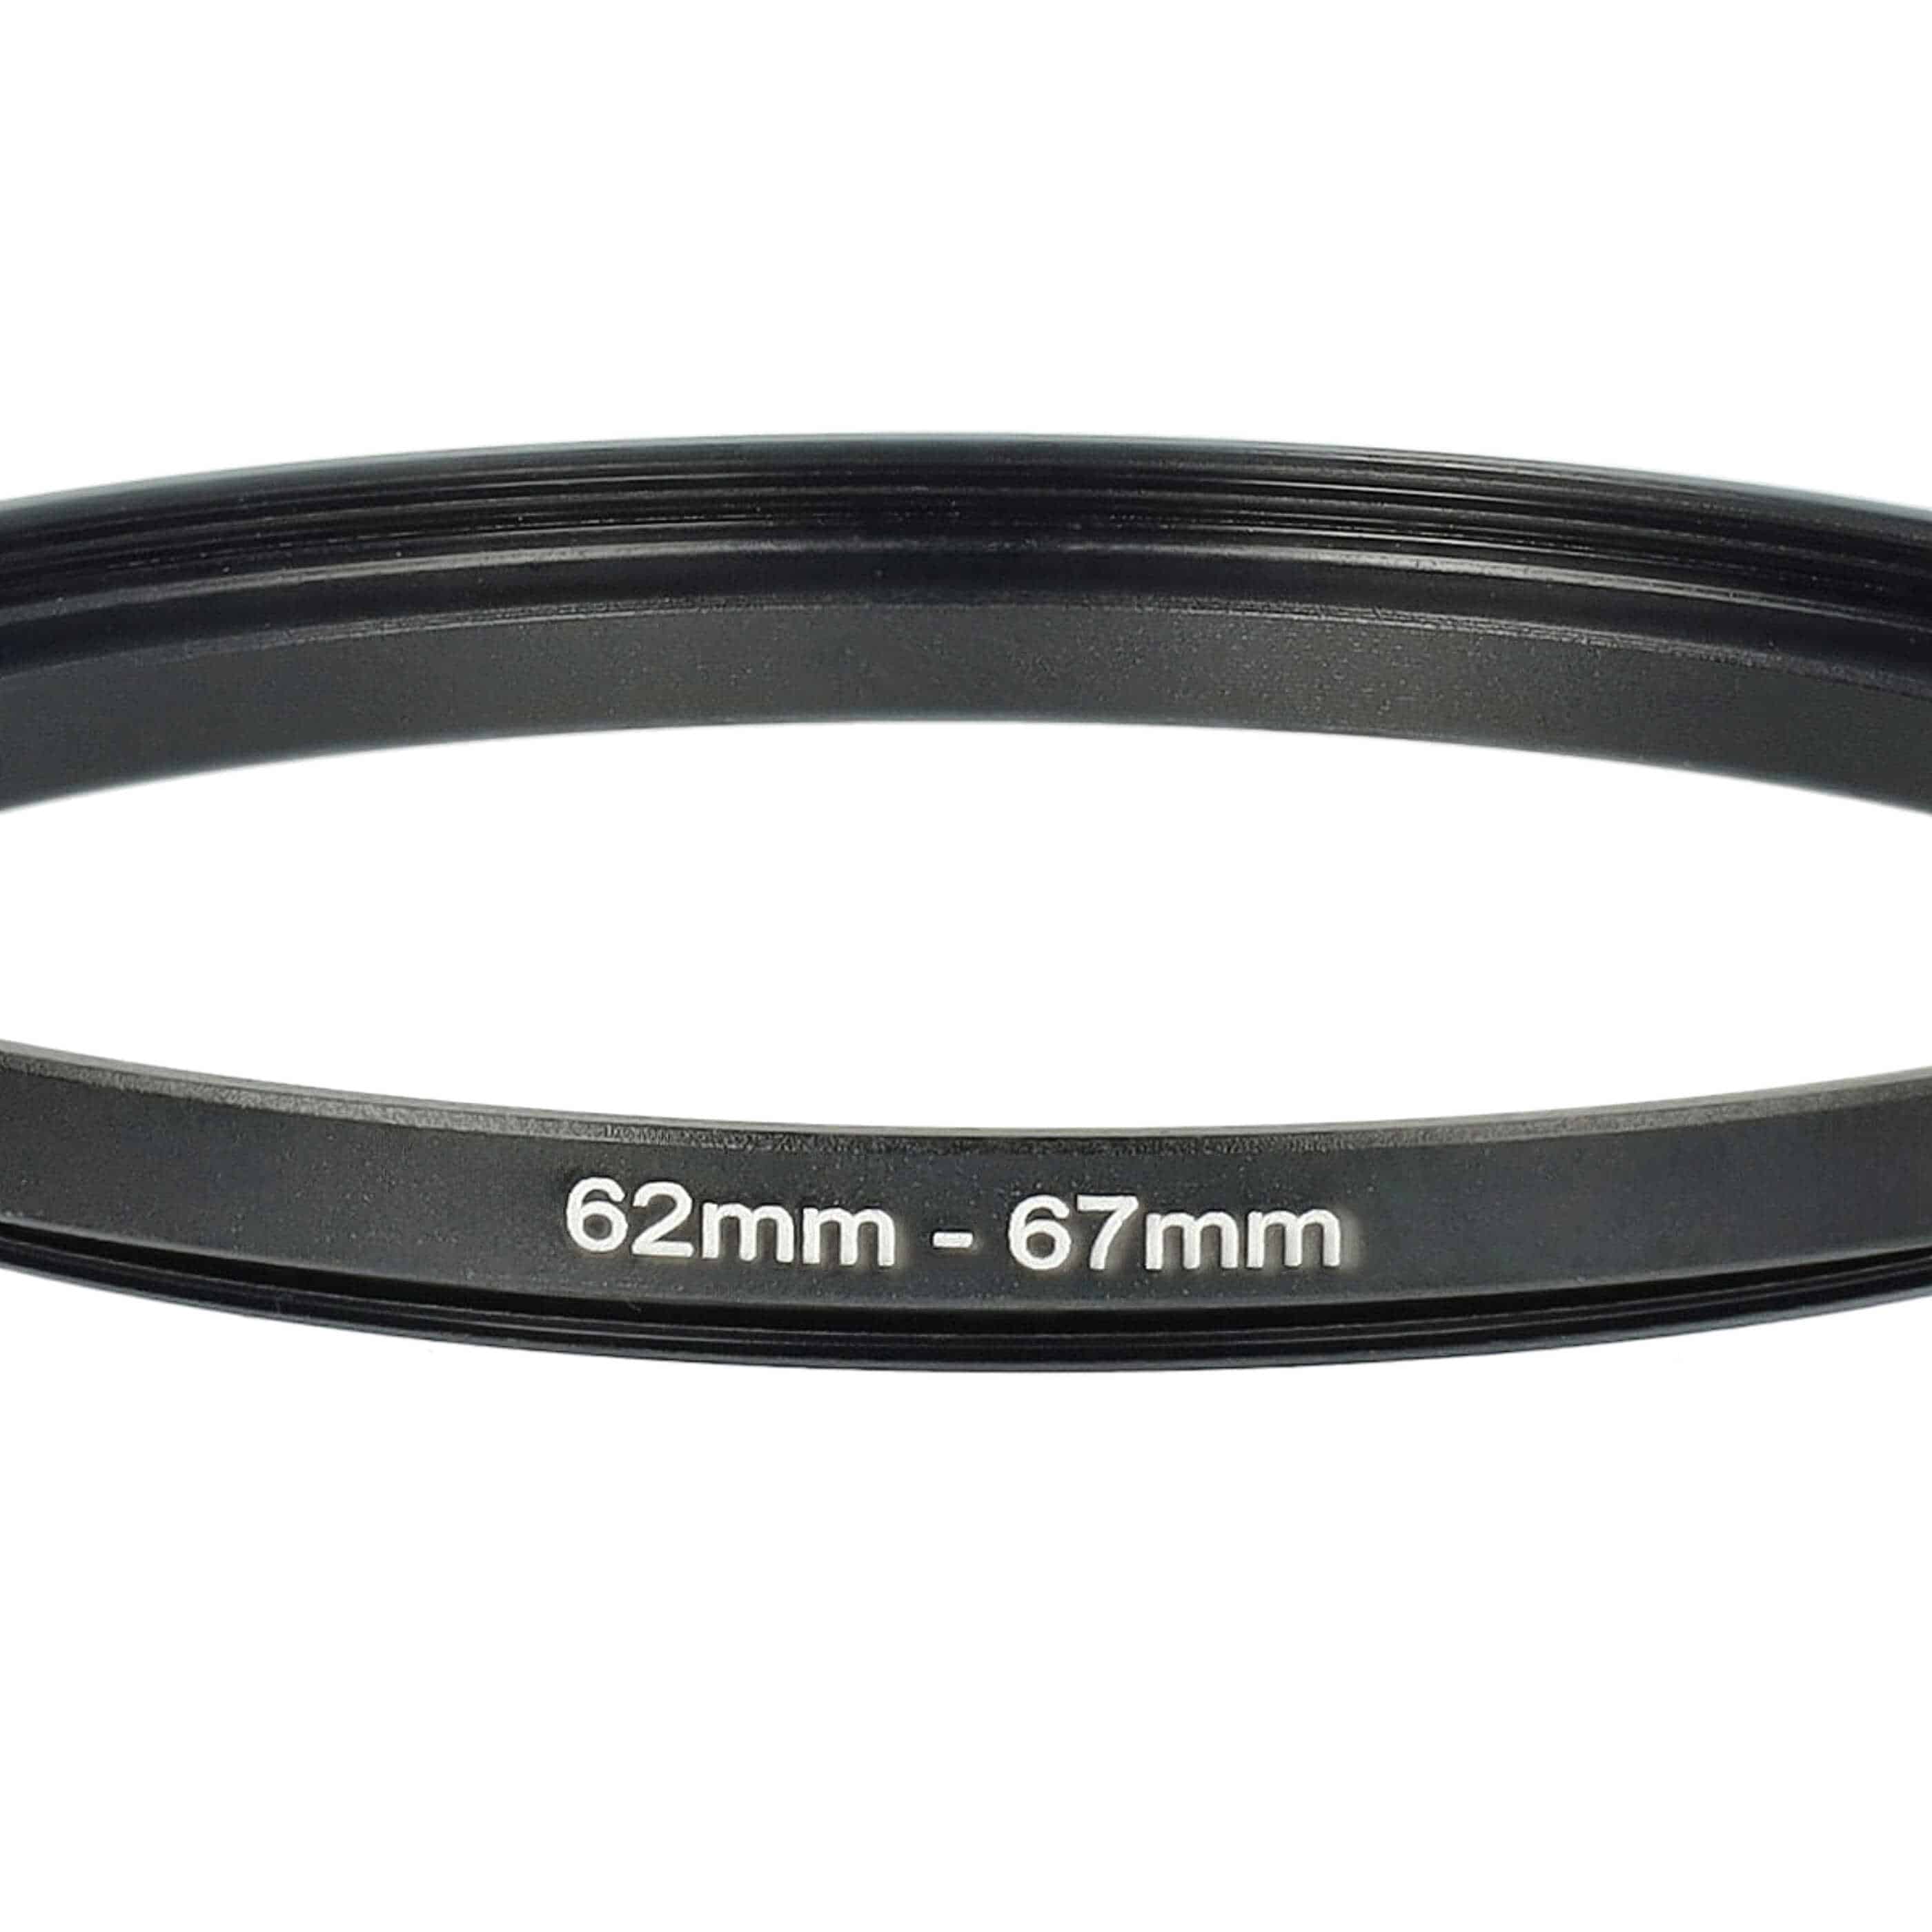 Step-Up-Ring Adapter 62 mm auf 67 mm passend für diverse Kamera-Objektive - Filteradapter